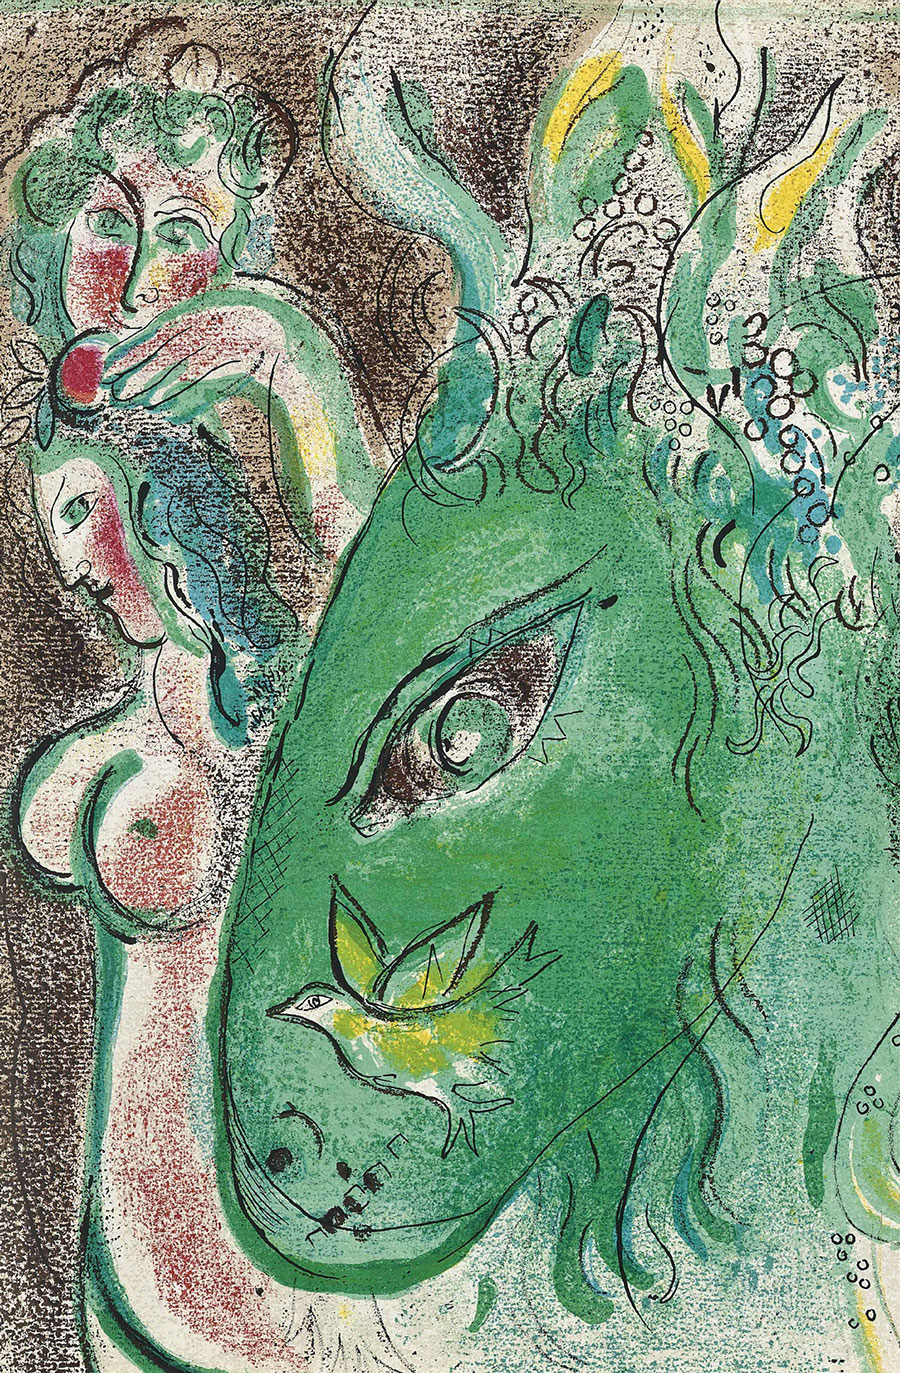 夏加尔油画作品: 绿色的马 高清大图欣赏